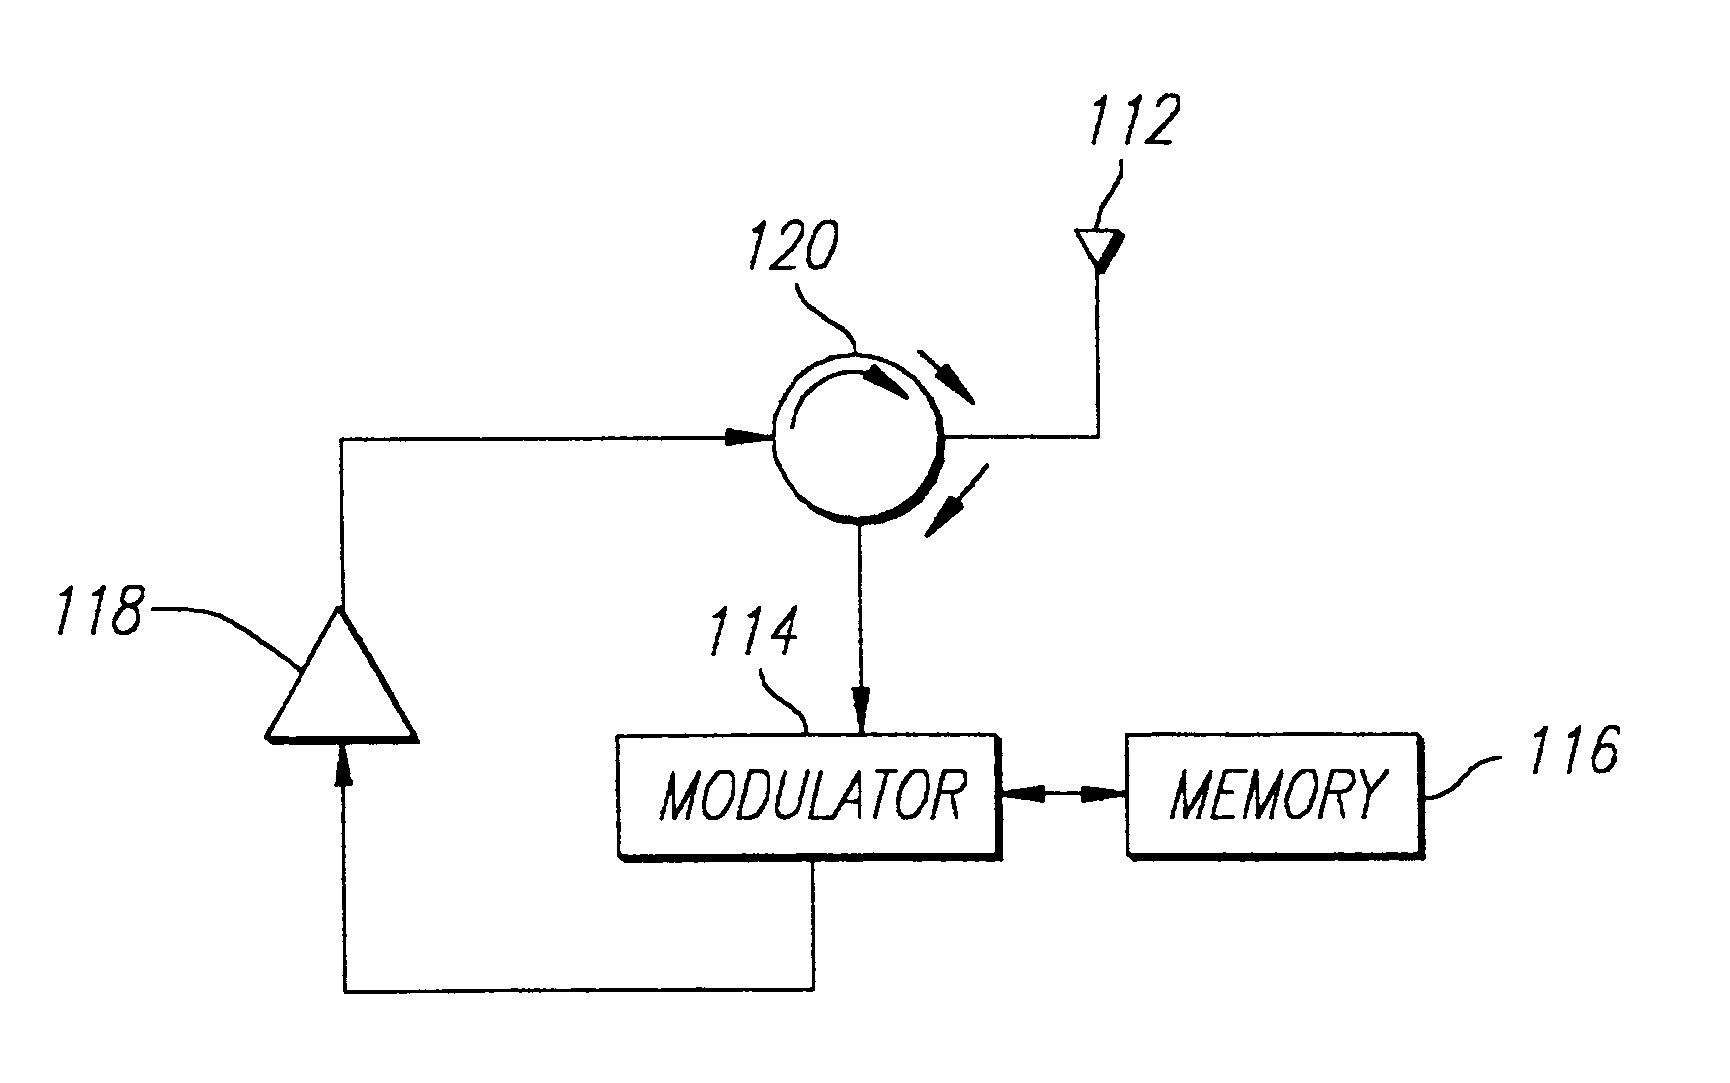 RFID transponder having active backscatter amplifier for re-transmitting a received signal